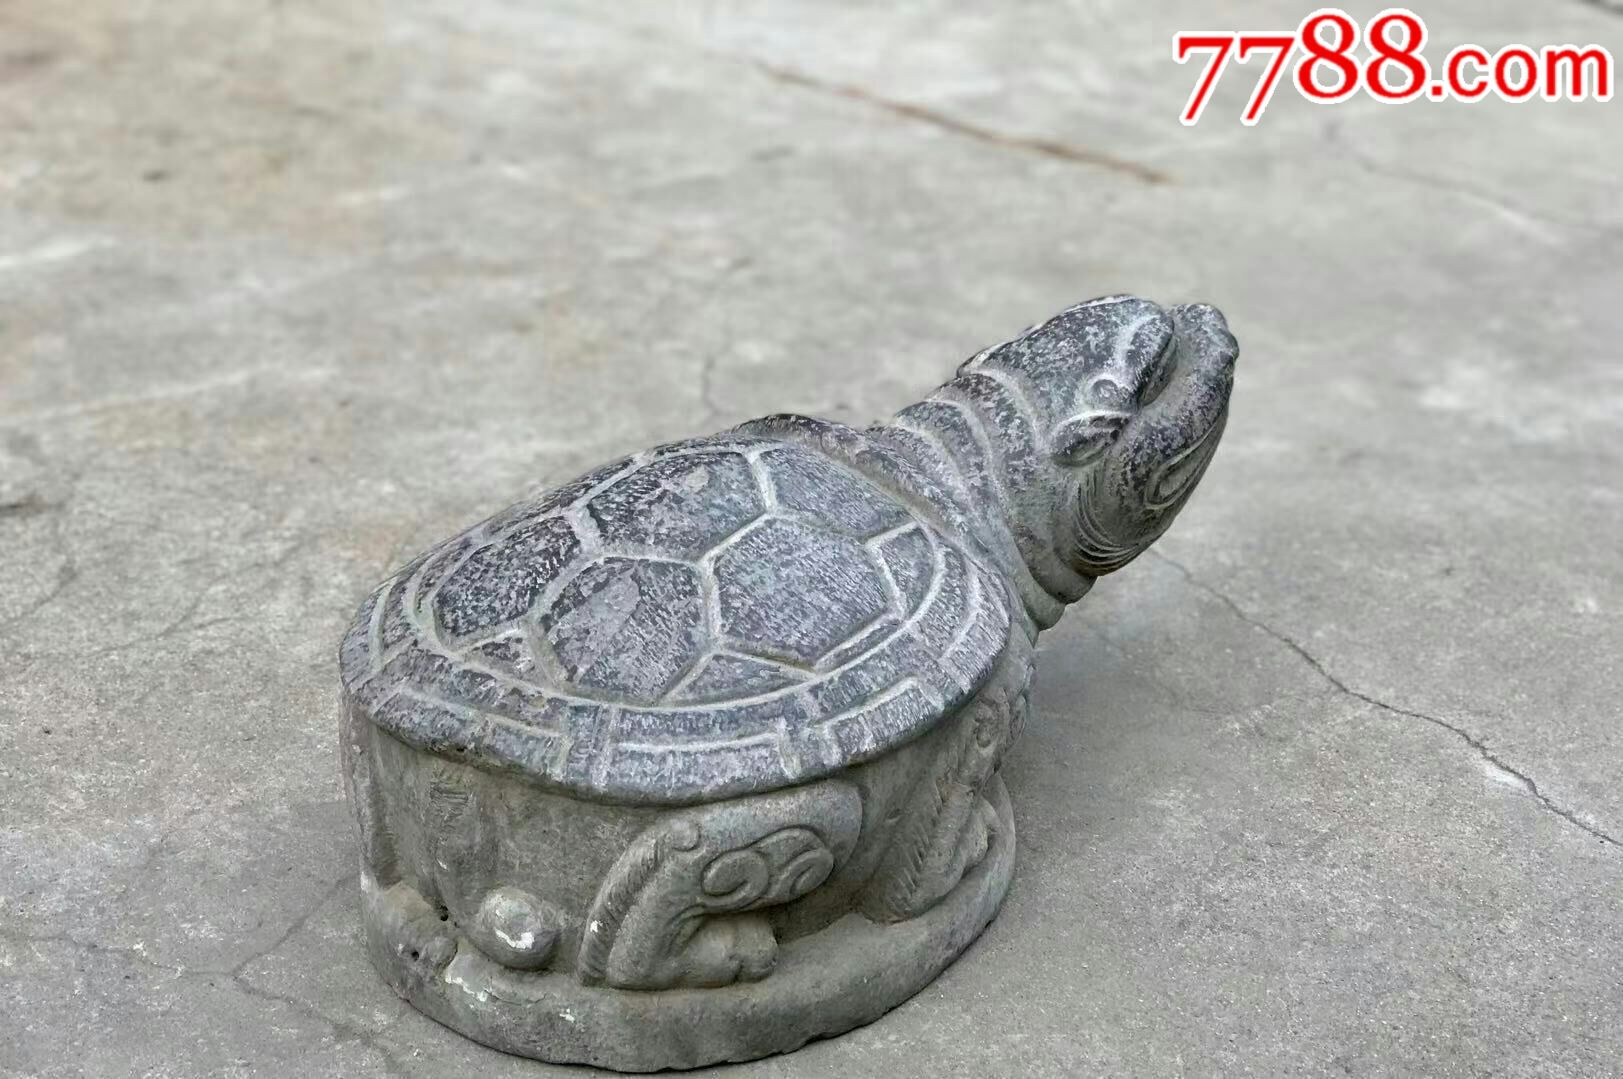 【石龟】青石包浆温润自然龟乃长寿的象征.也有镇宅纳财之意.